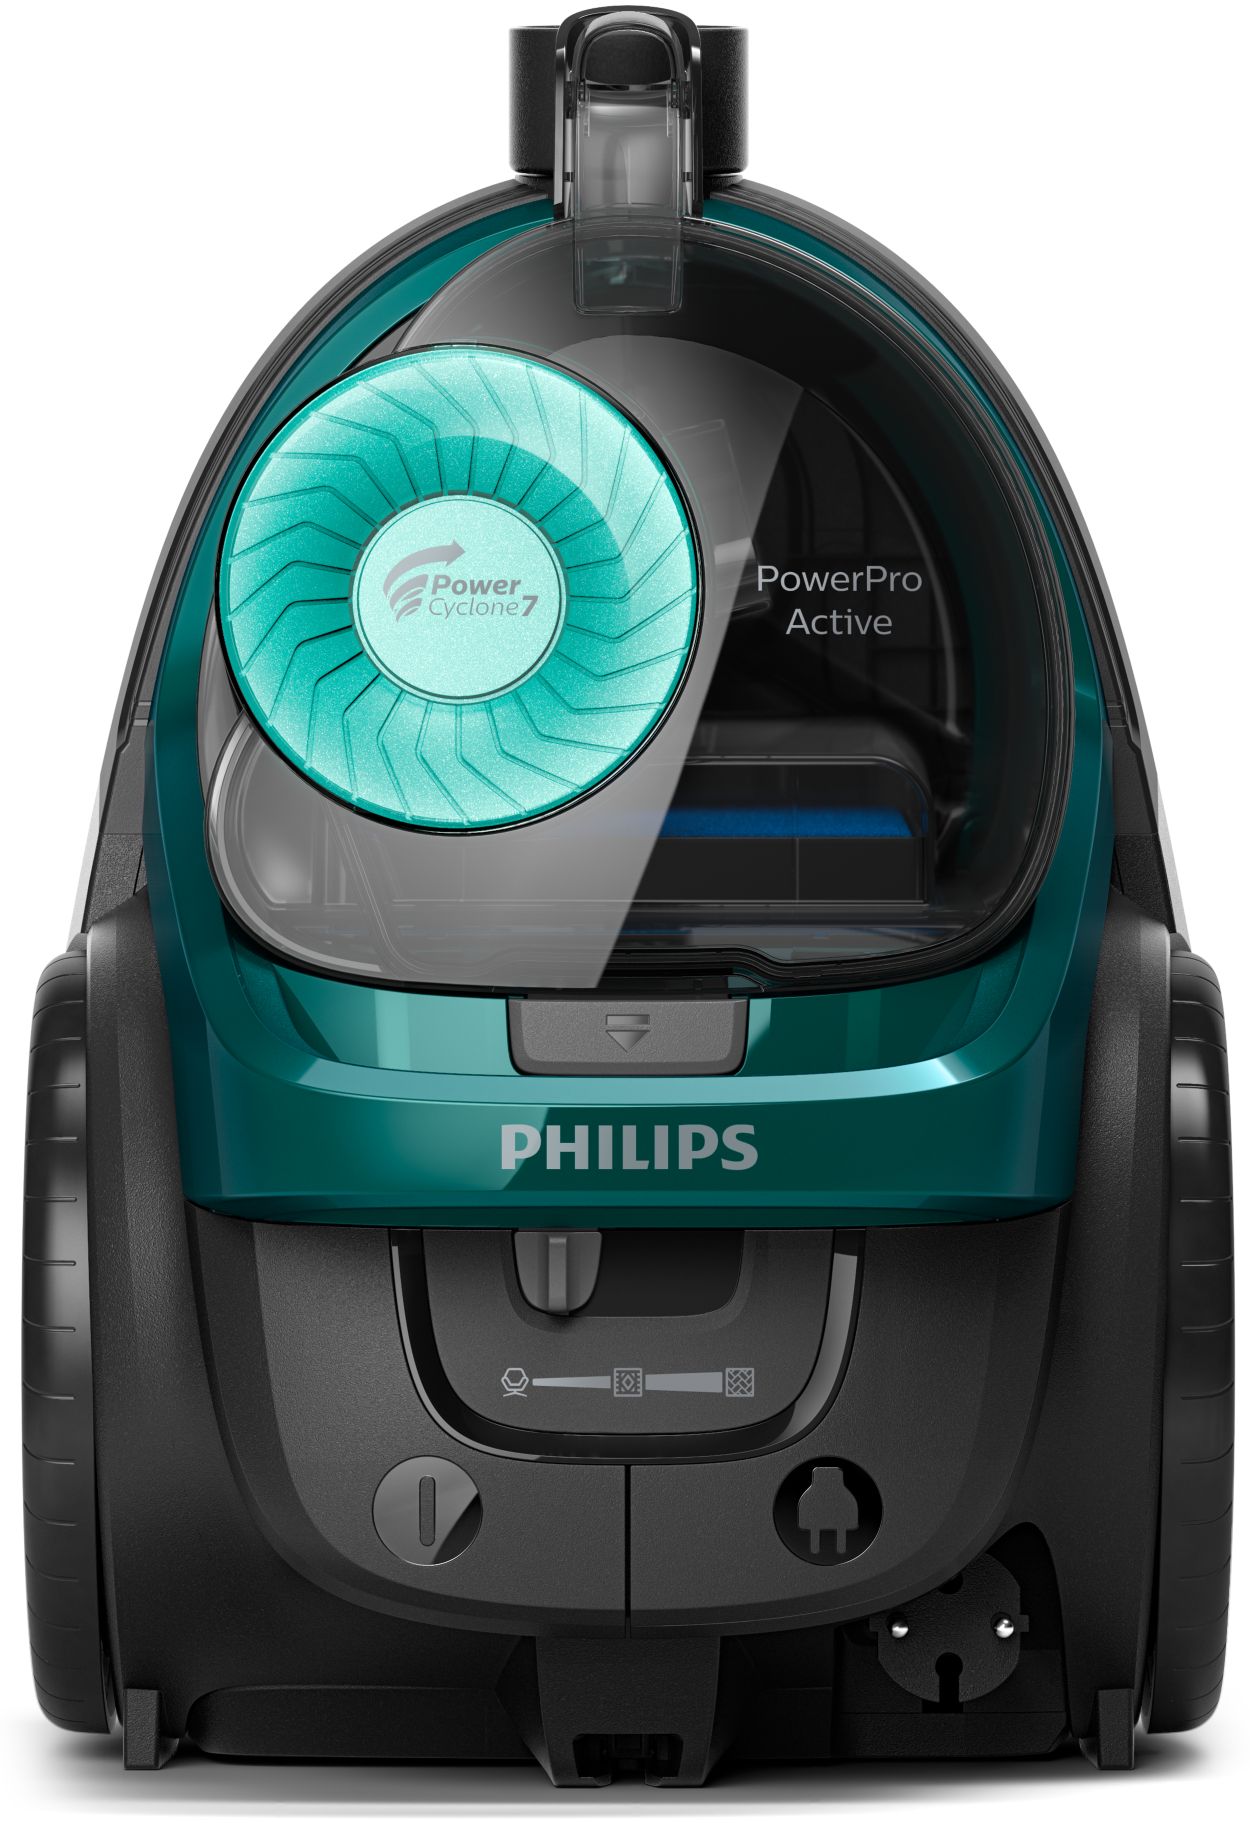 Philips 5000 Series Aspiradora sin Bolsa Potente- Motor de 900 W,  Tecnología PowerCyclone 7, Filtro H13